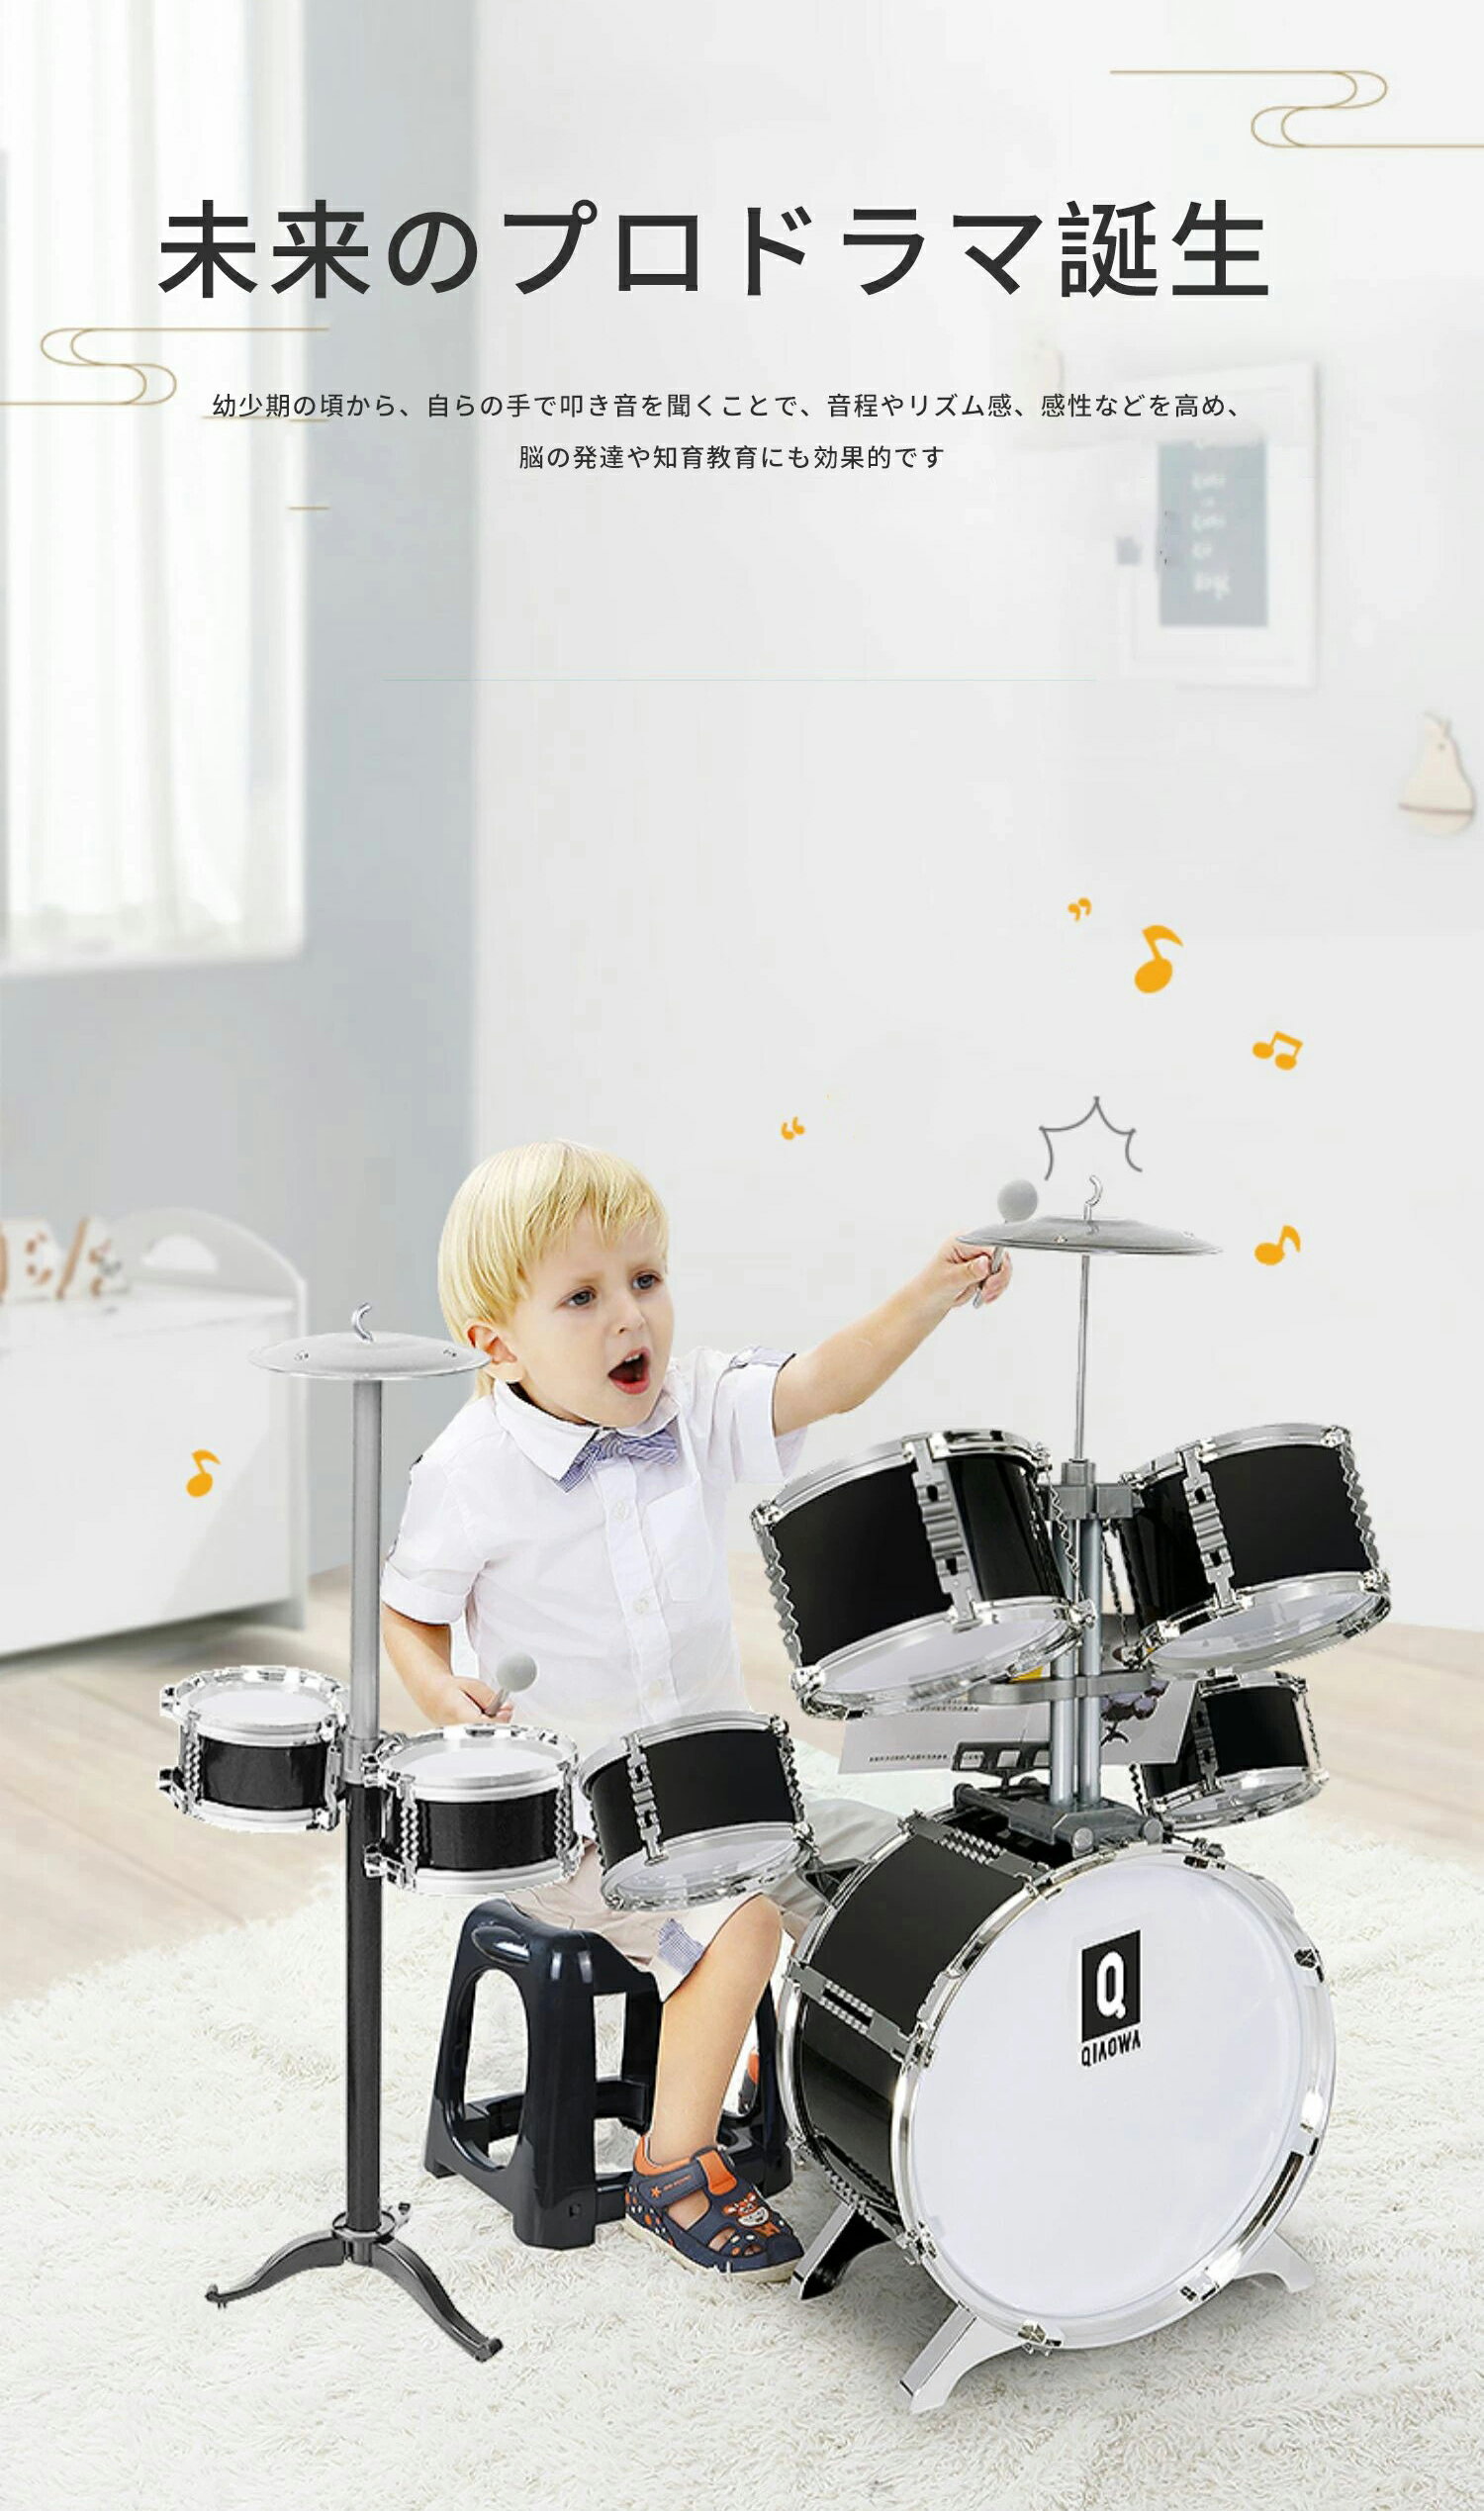 リズム 音楽 12ヵ月 学習トイ ジトレ タプタプ GI202 知育玩具 おもちゃ 楽器 0歳 1歳 1歳半 2歳 3歳 4歳 誕生日プレゼント 女の子 男の子